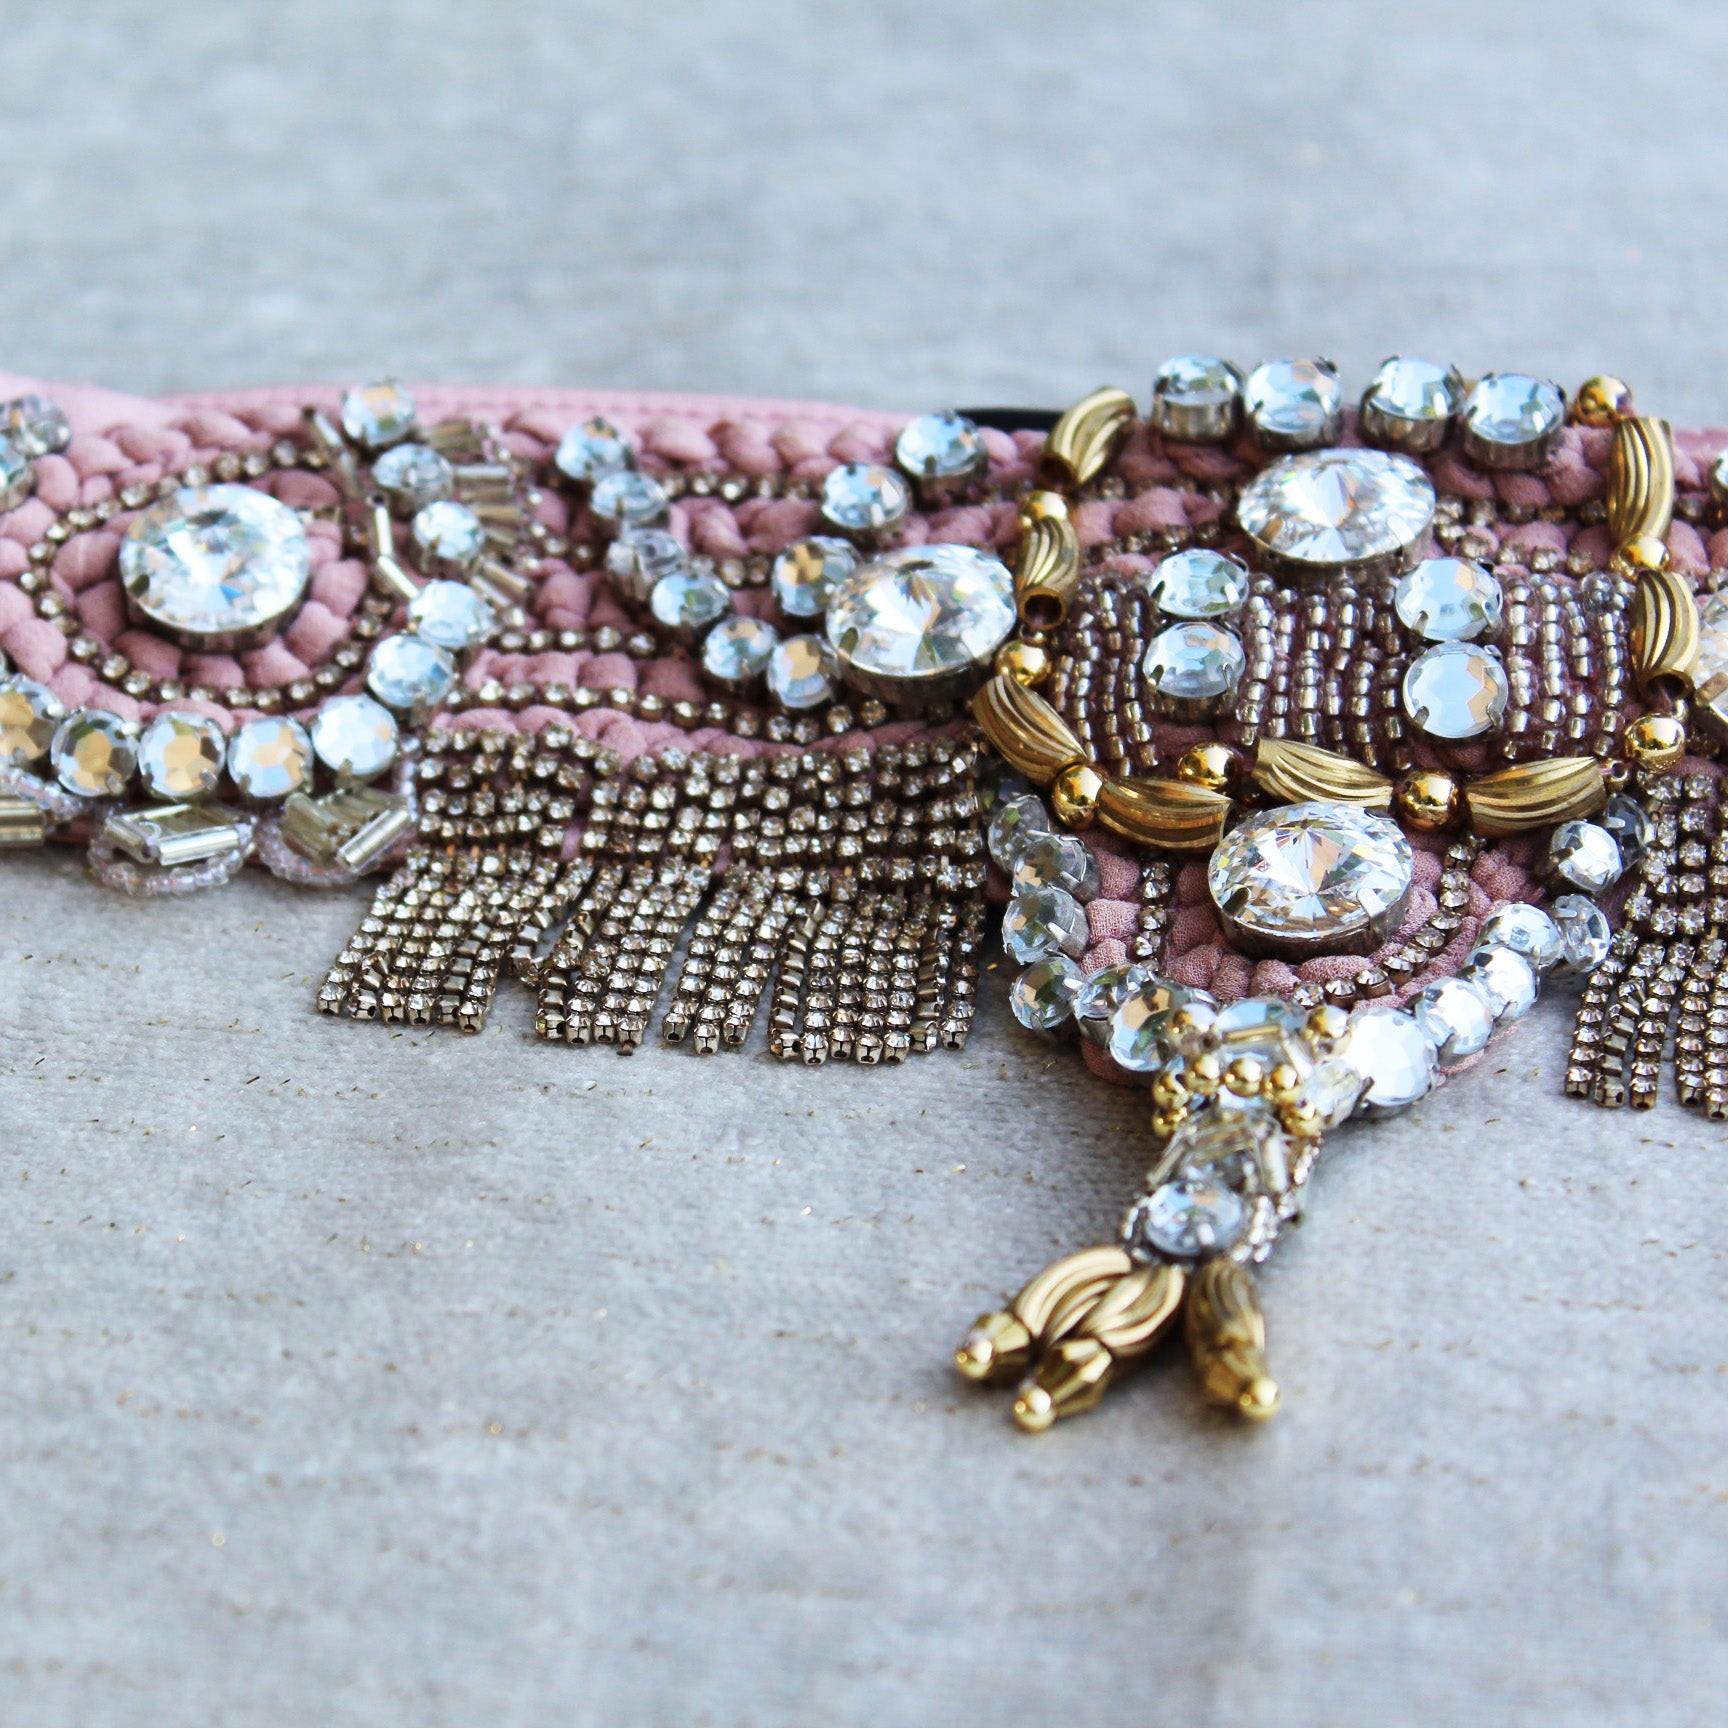 Temperley Embellished Pink Belt